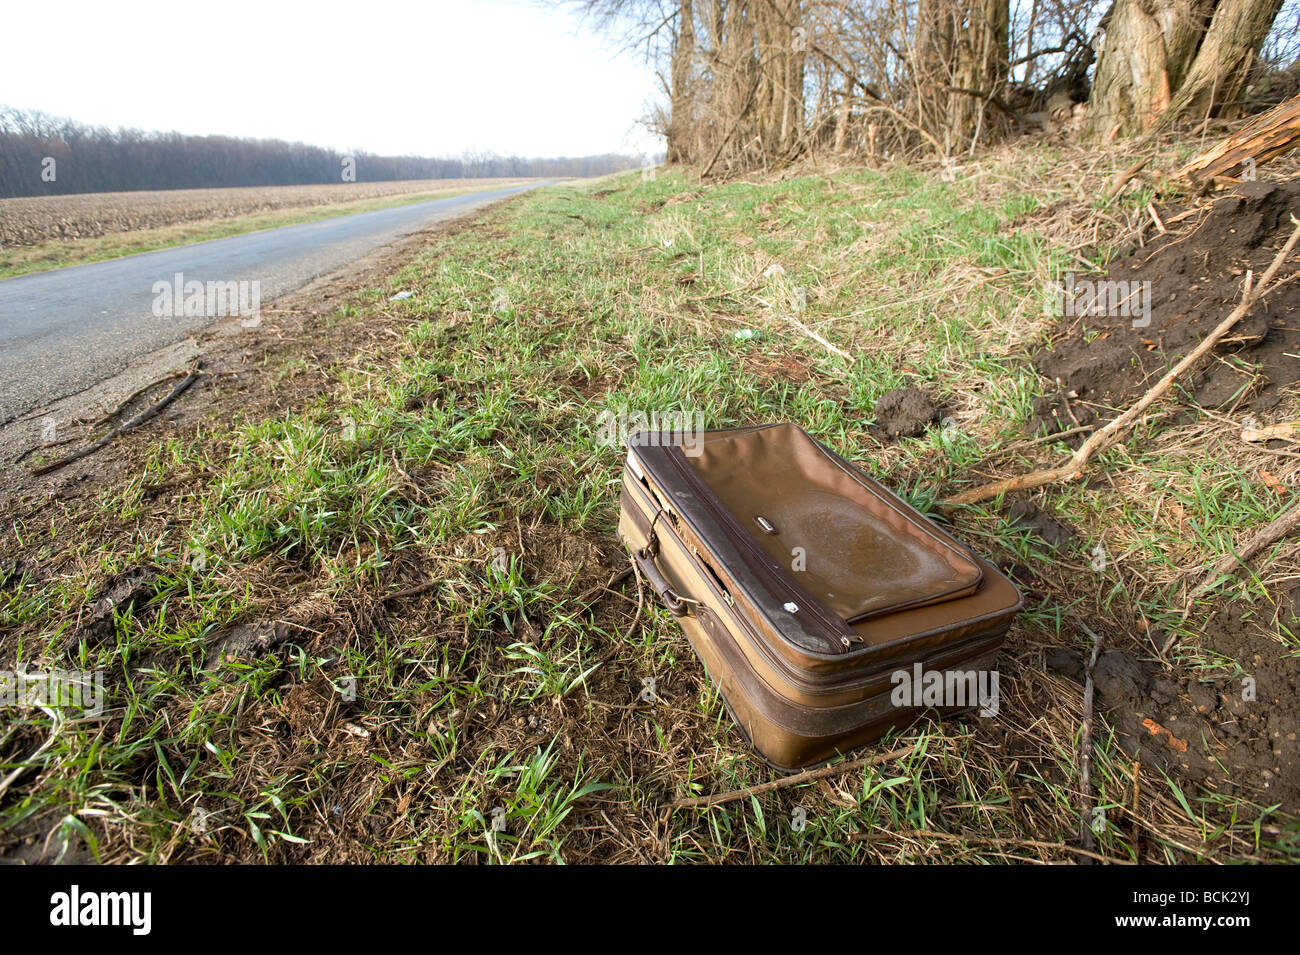 Valise abandonnée gisant au bord de la route Photo Stock - Alamy